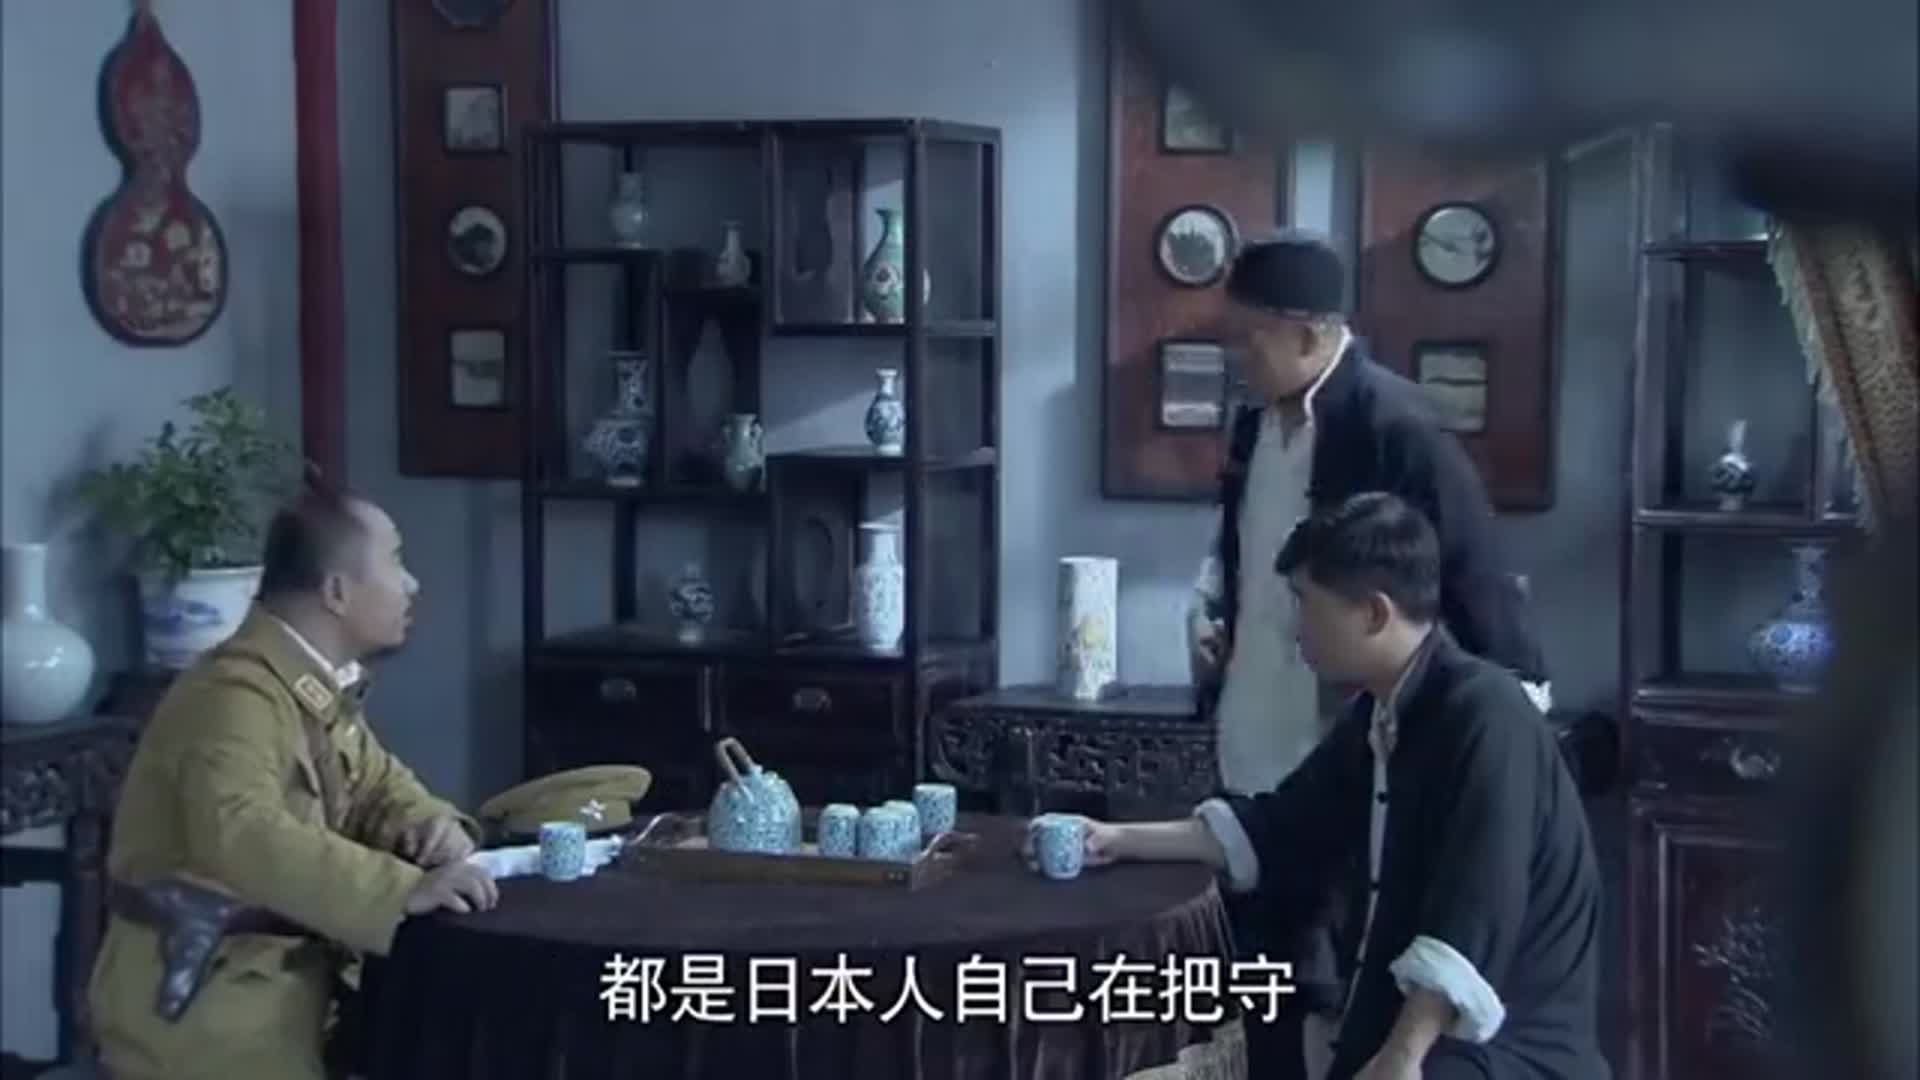 雪豹坚强岁月:刘三他们收到消息,准备开始行动,但是他